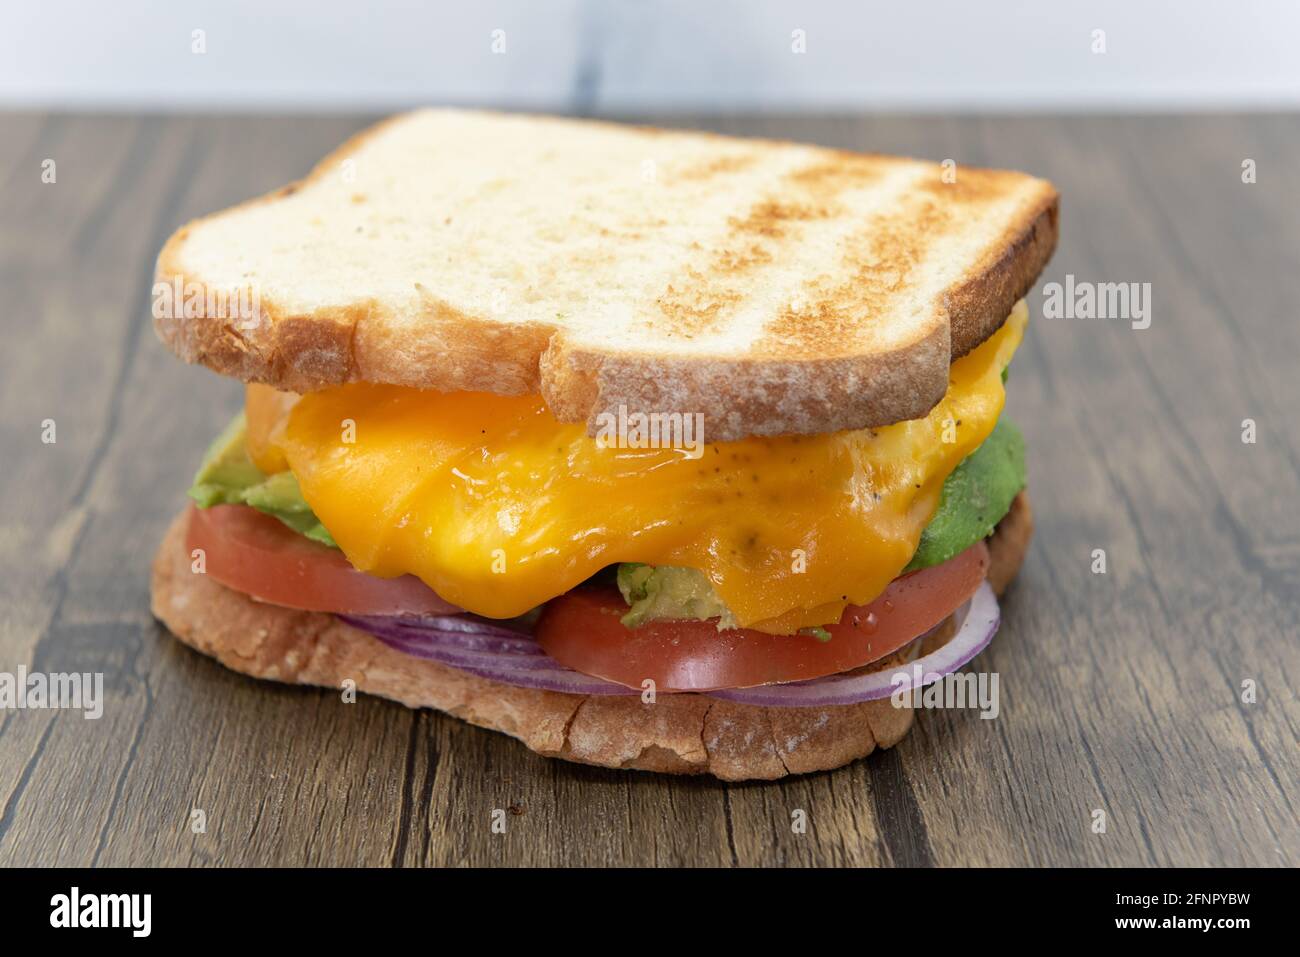 Geröstetes Brot an beiden Enden dieses dicken Ei- und Avocado-Sandwiches mit Avocado, geschmolzenem Käse, Zwiebeln und Tomaten. Stockfoto